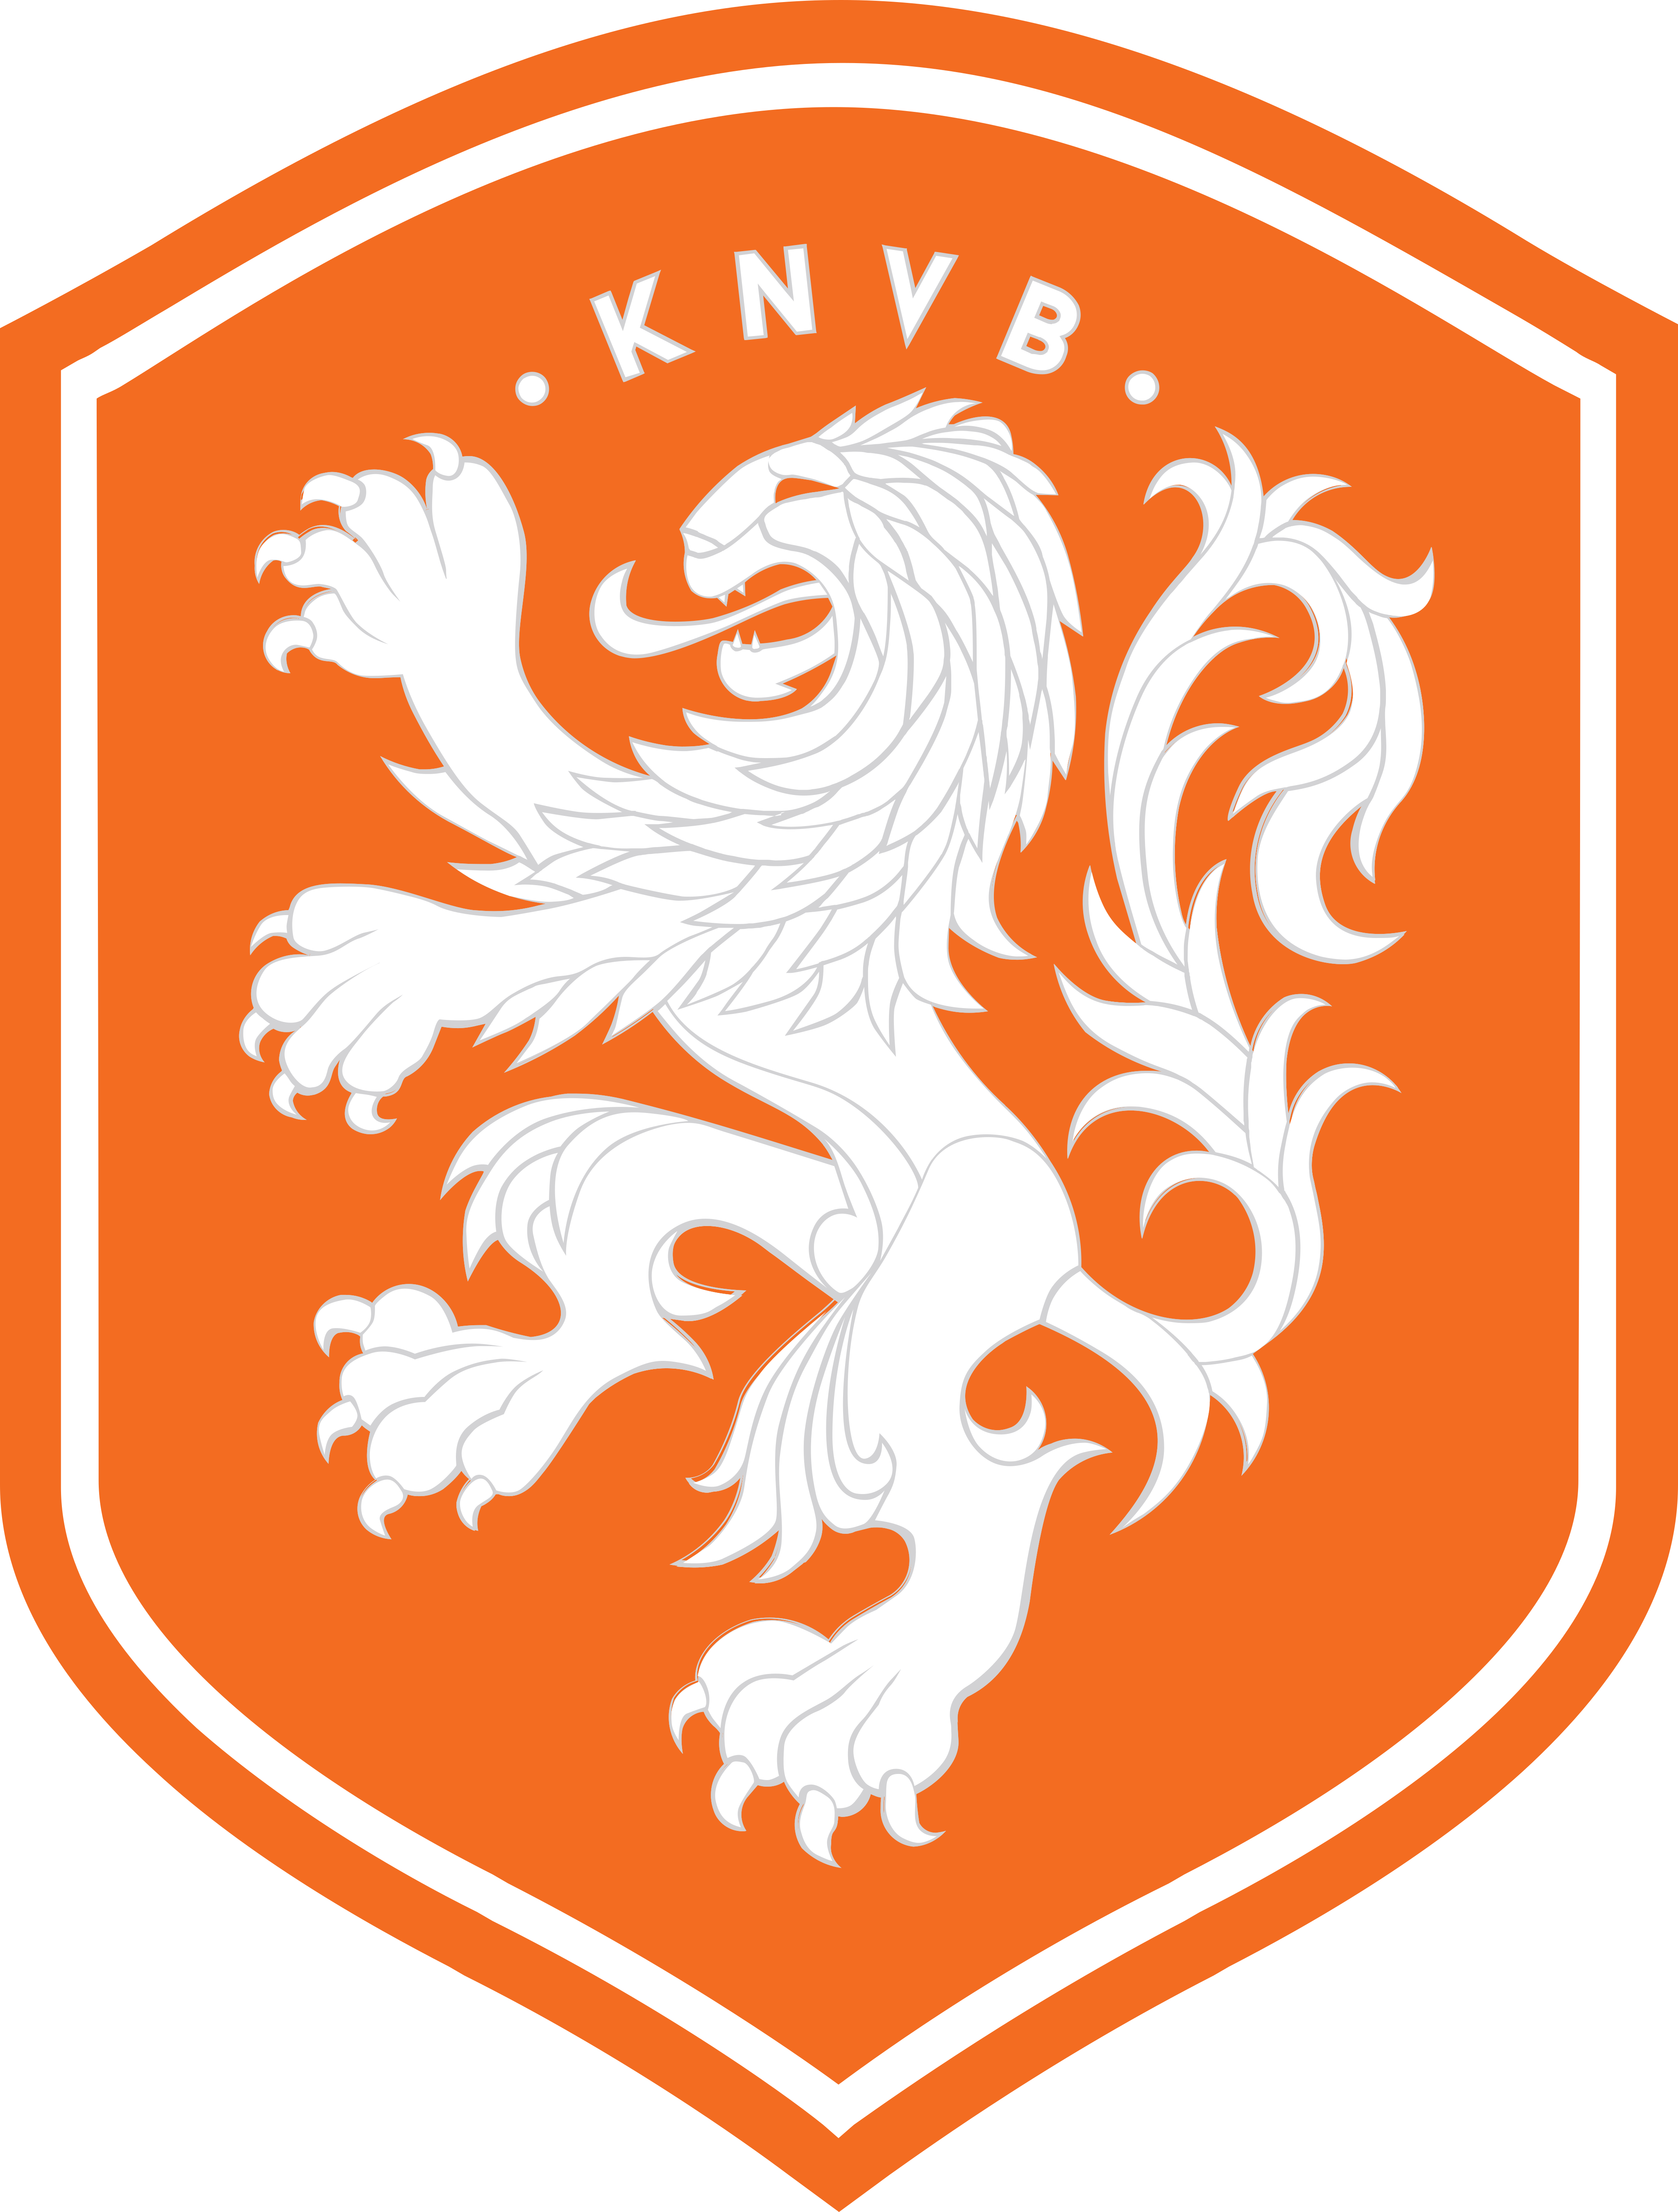 holanda netherlands football team logo - KNVB - Équipe des Pays-Bas de Football Logo